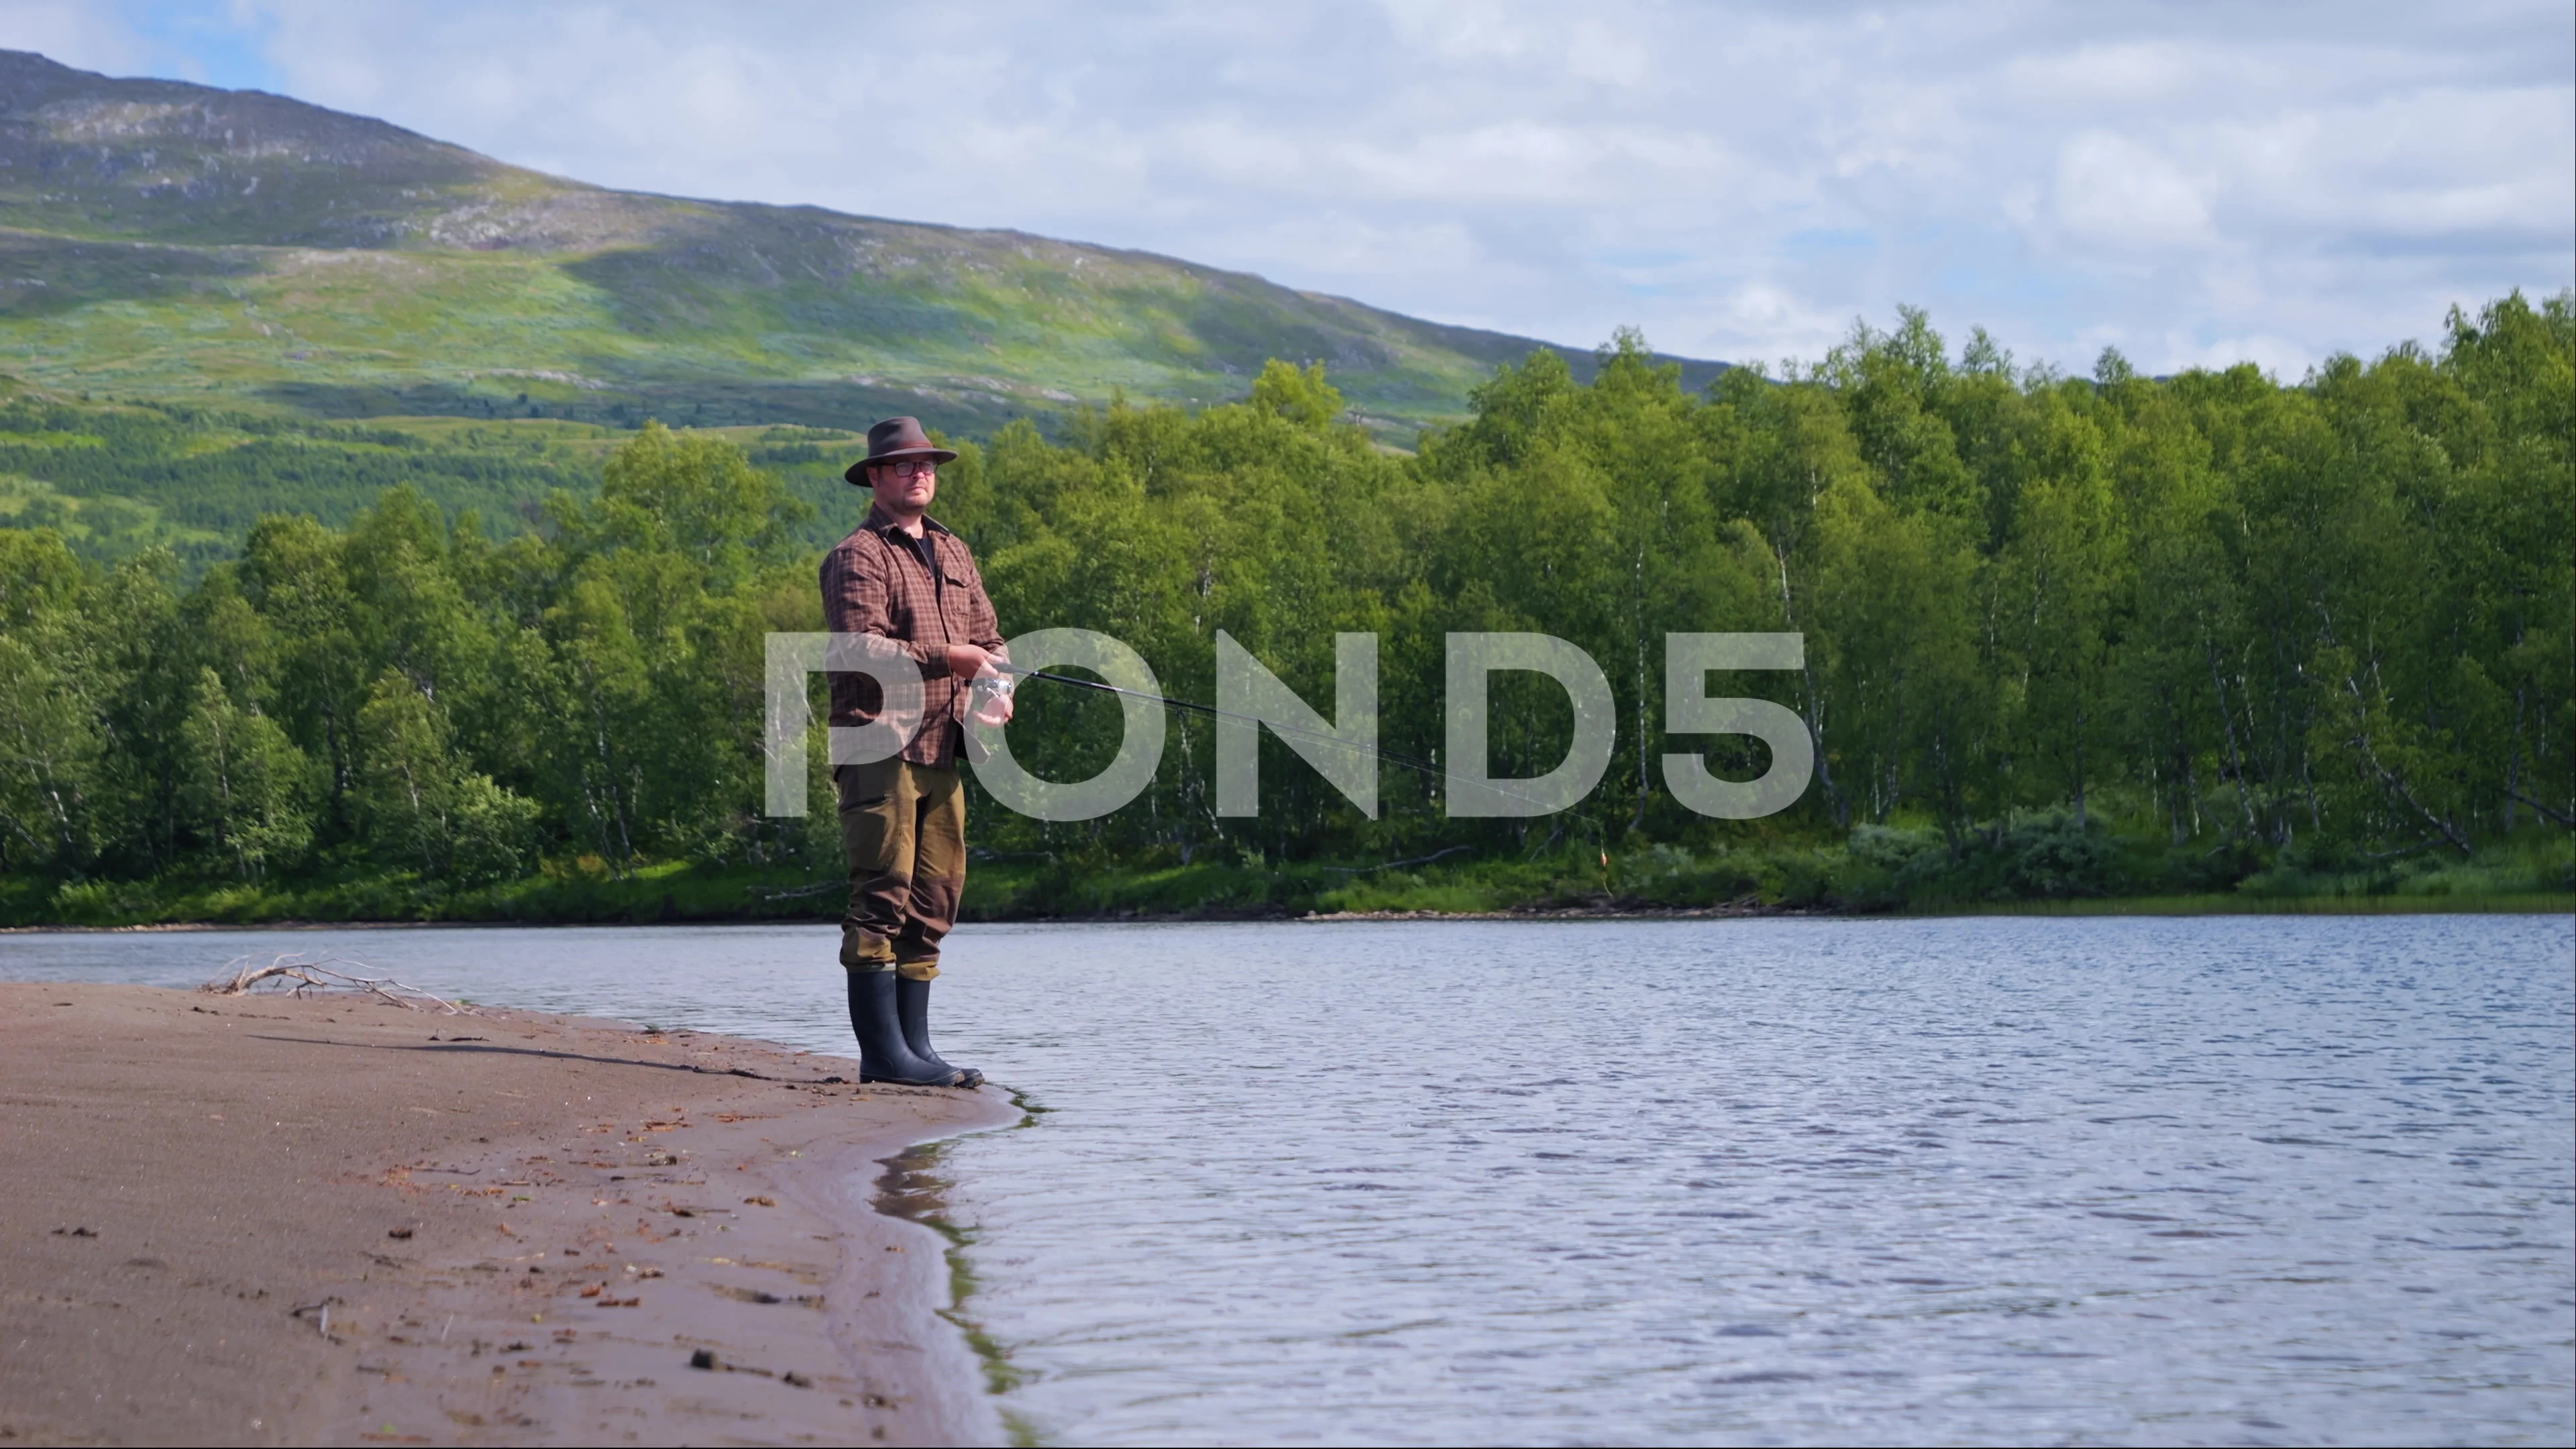 https://images.pond5.com/man-casting-fishing-line-lake-footage-247875987_prevstill.jpeg